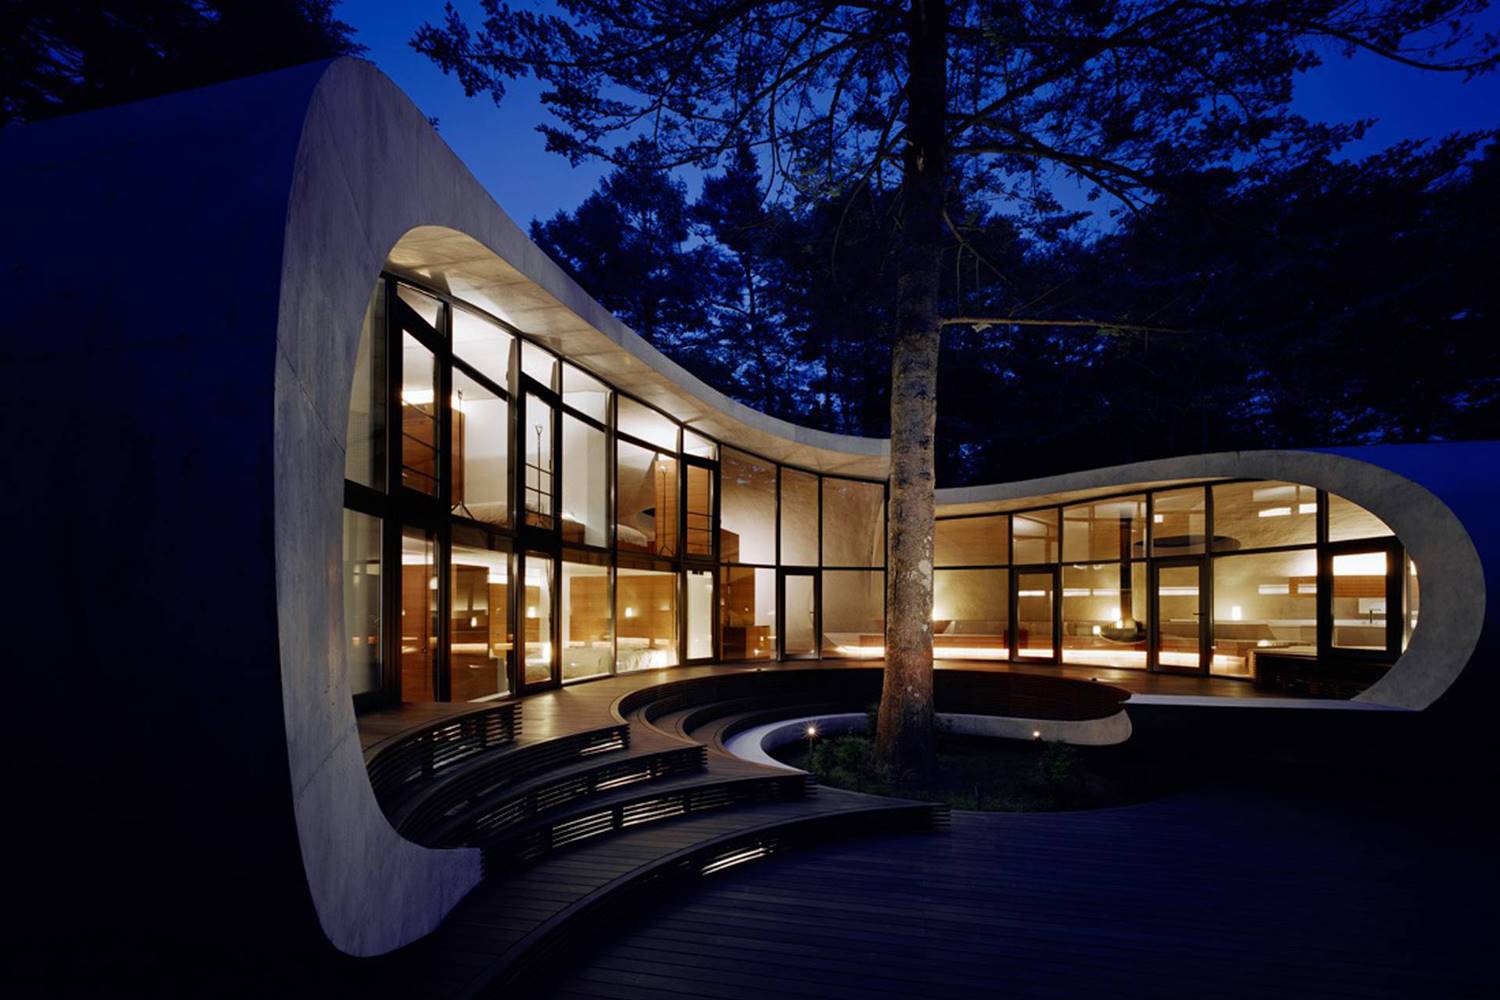 El estudio japonés ARTechnic Architects diseñó la envolvente de la casa Shell como una gran cáscara sinuosa que se pliega para encerrar espacios y generar porches.
